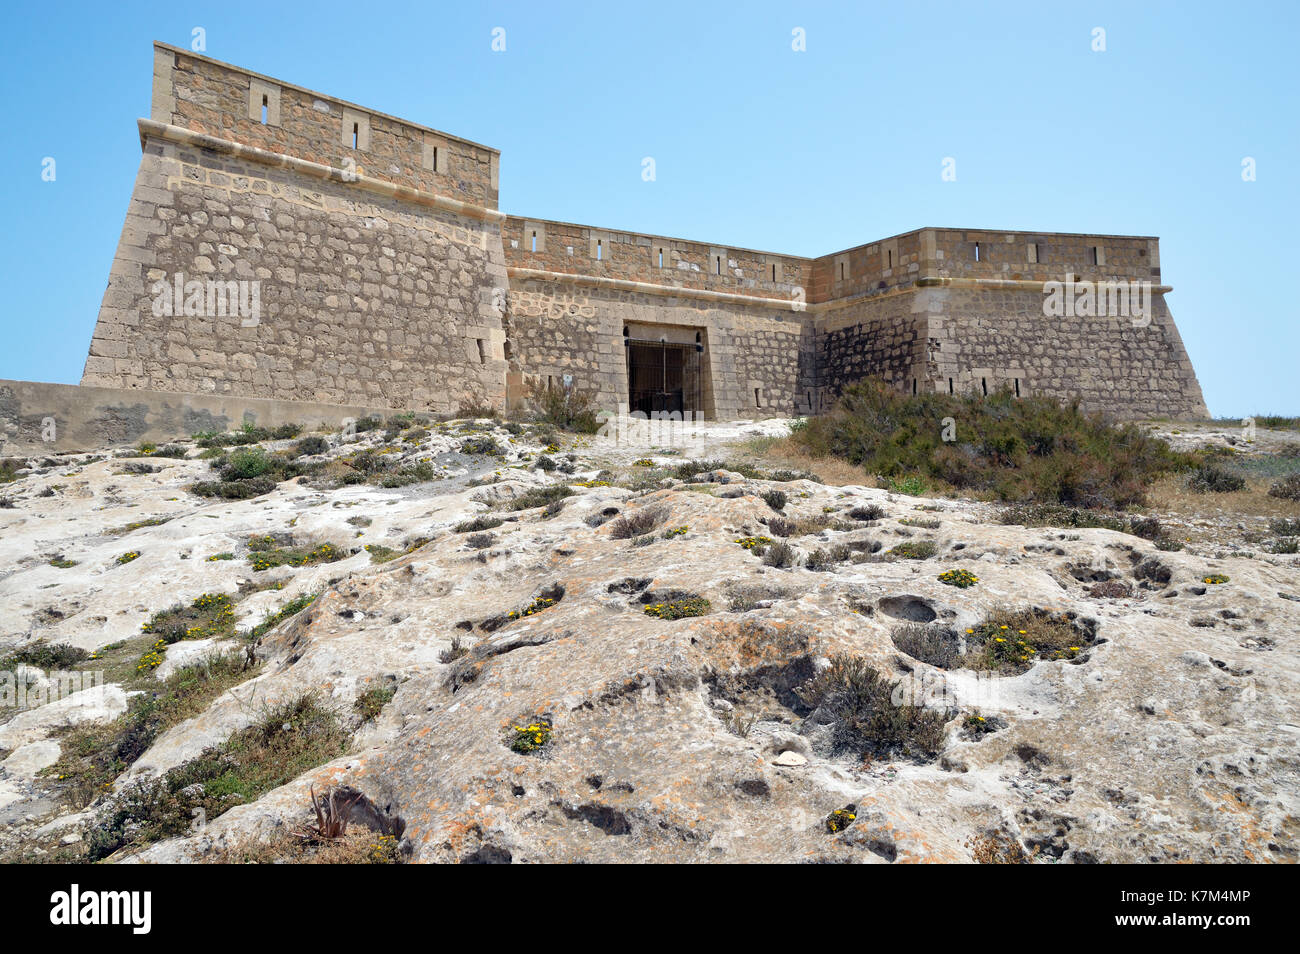 Castillo de San Felipe è un piccolo castello spagnolo nei pressi di Los Escullos a Almería. Questo forte del XVII secolo fu costruito per difendersi dai pirati barbarici. Foto Stock